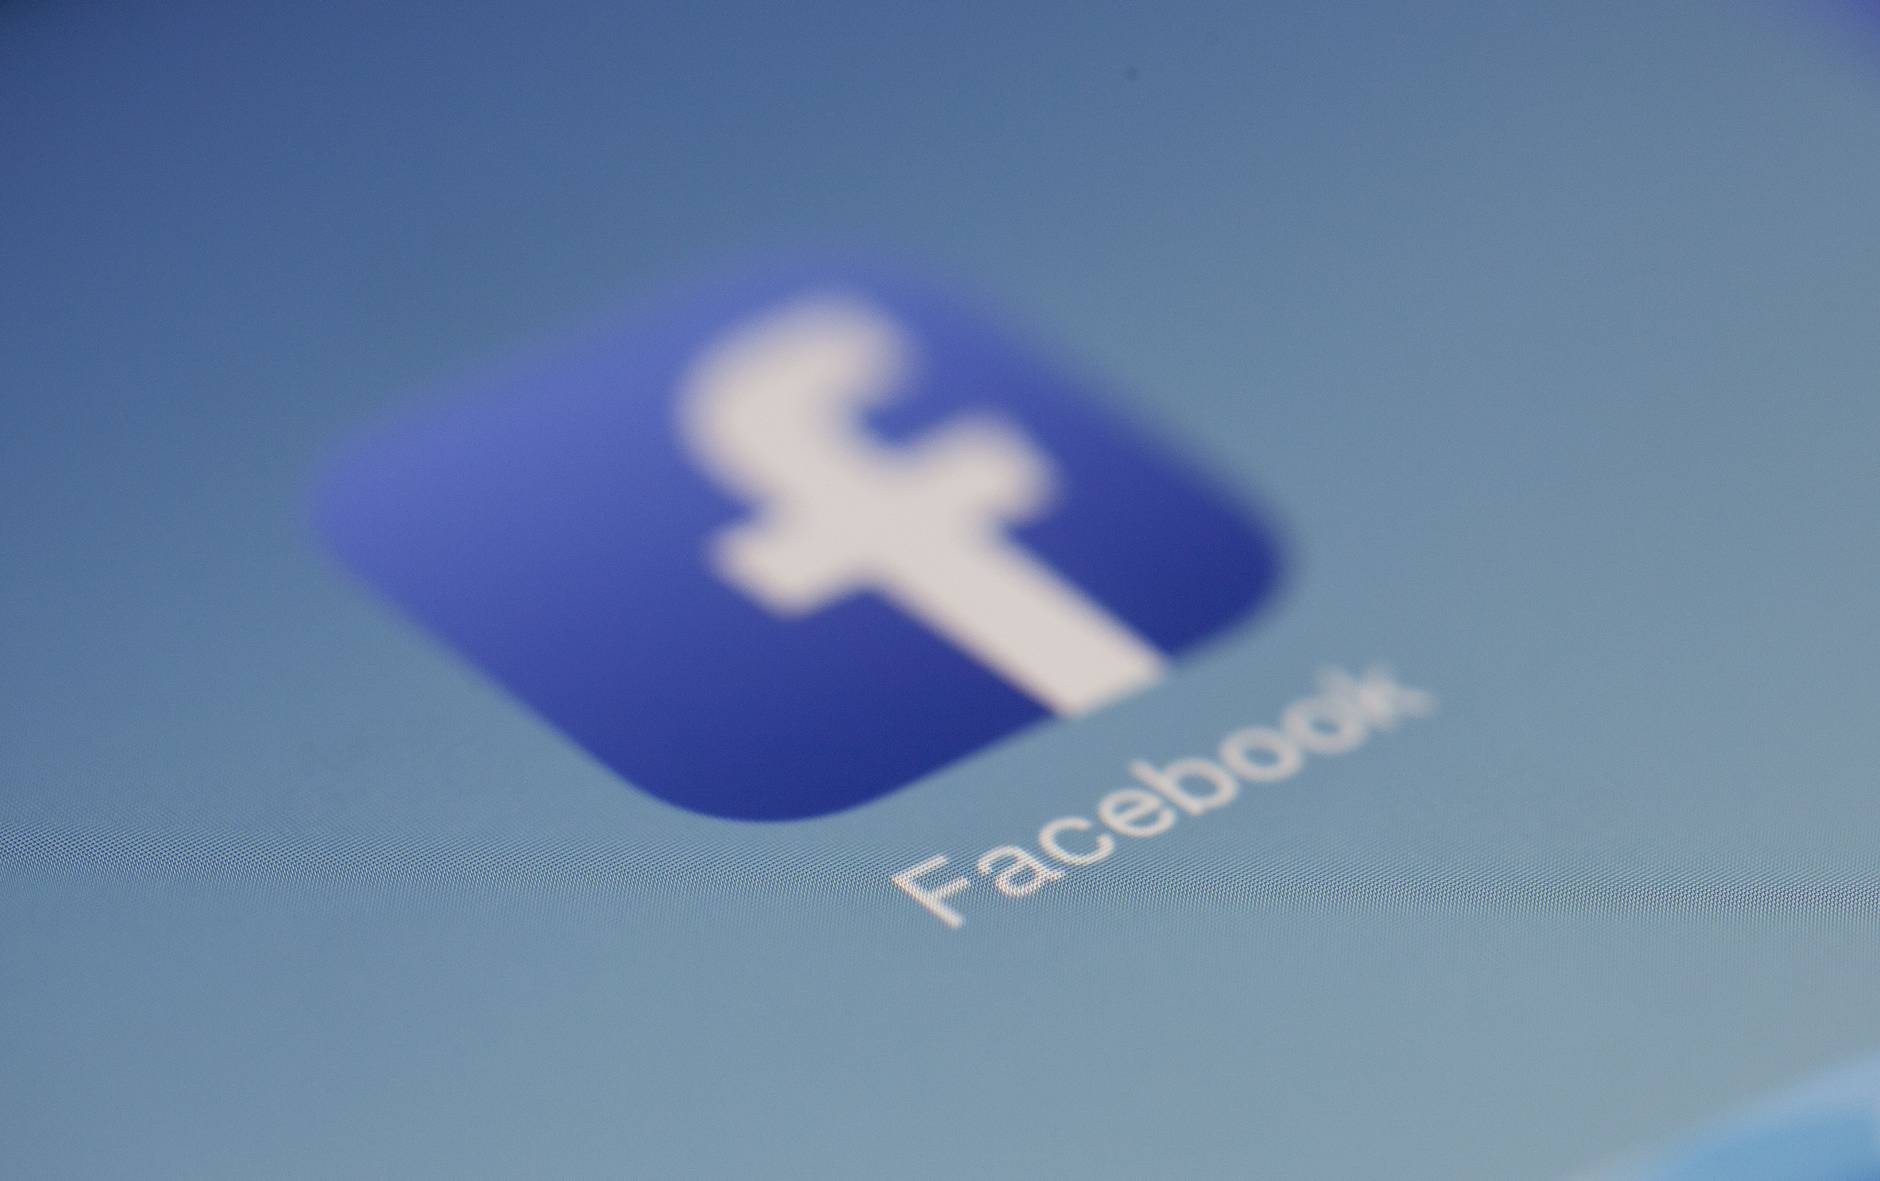 Desinformación en salud y propaganda socavan confianza en Facebook